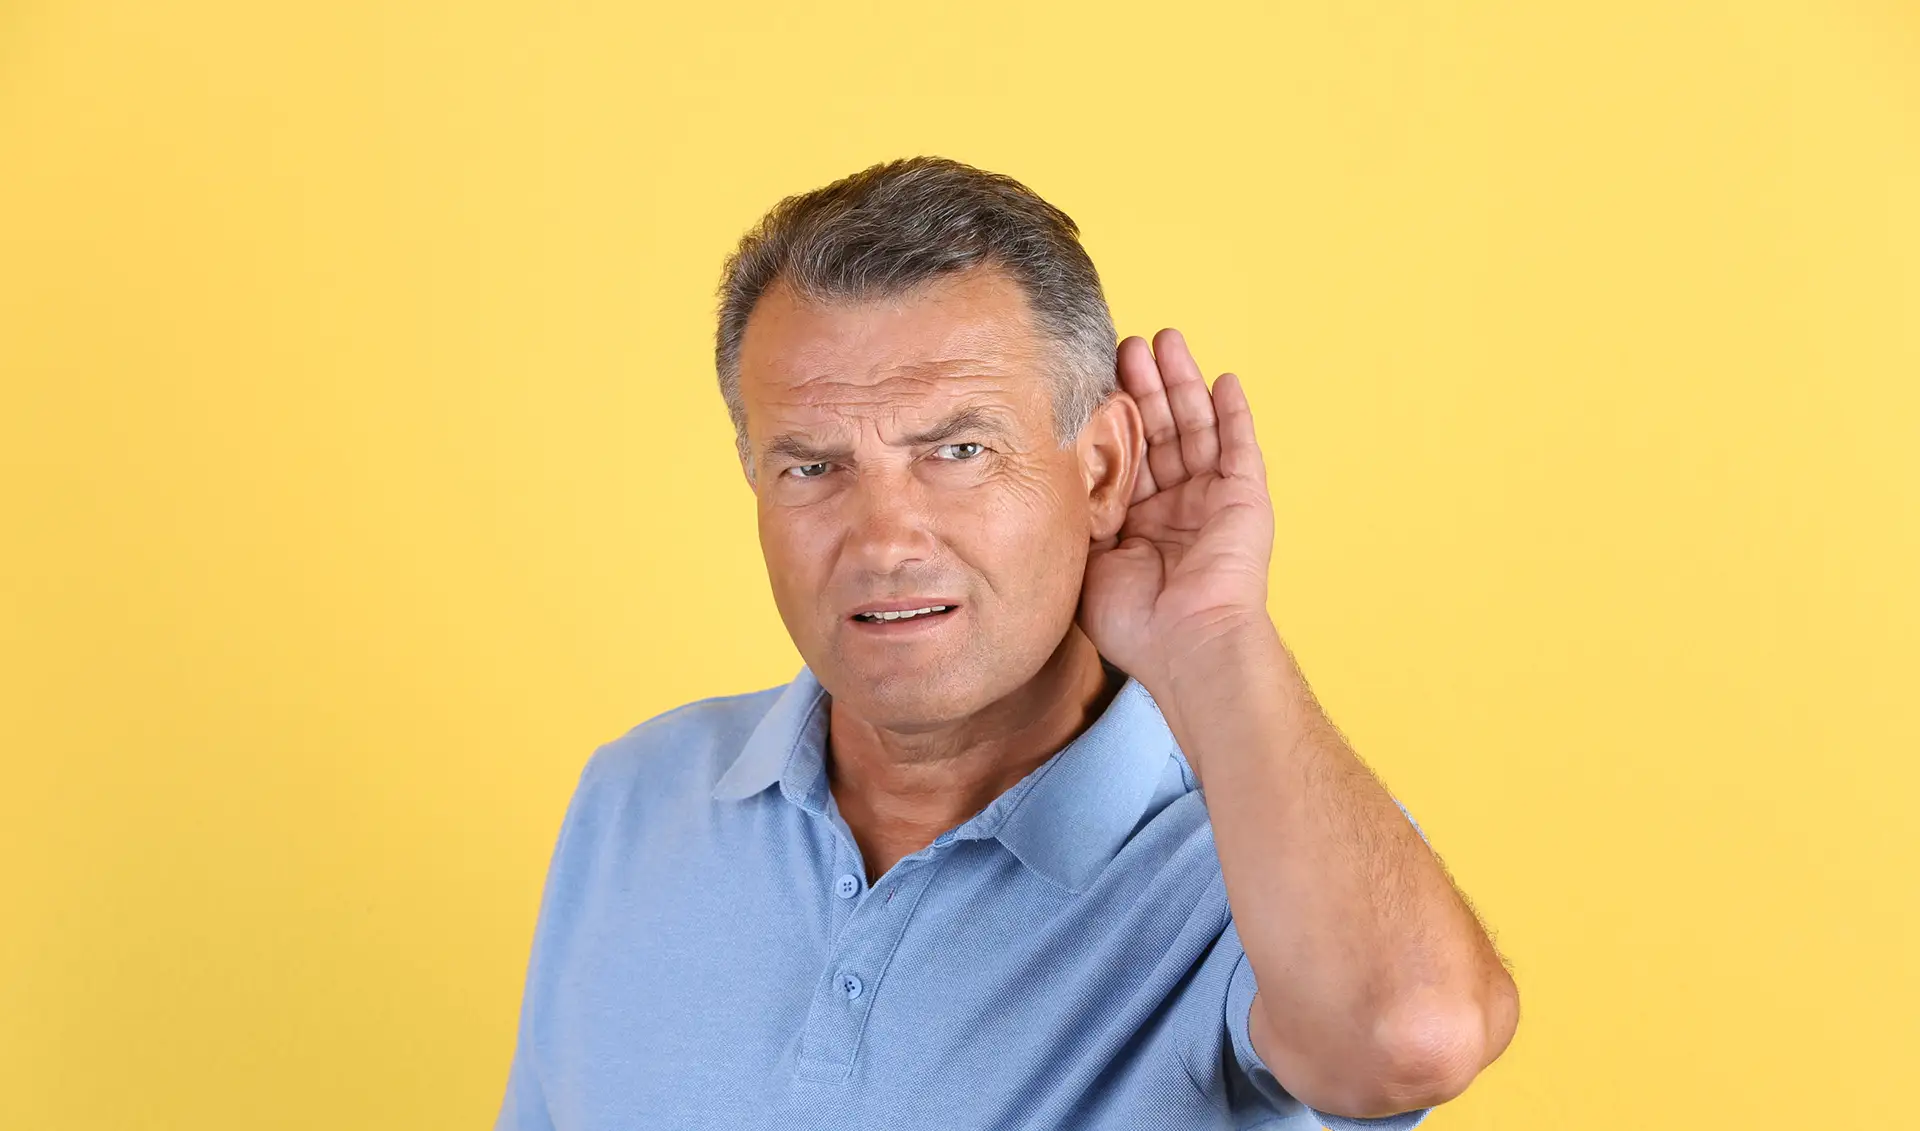 Profitez du 100% santé dans vos centres de solutions auditives<br />
à Strasbourg